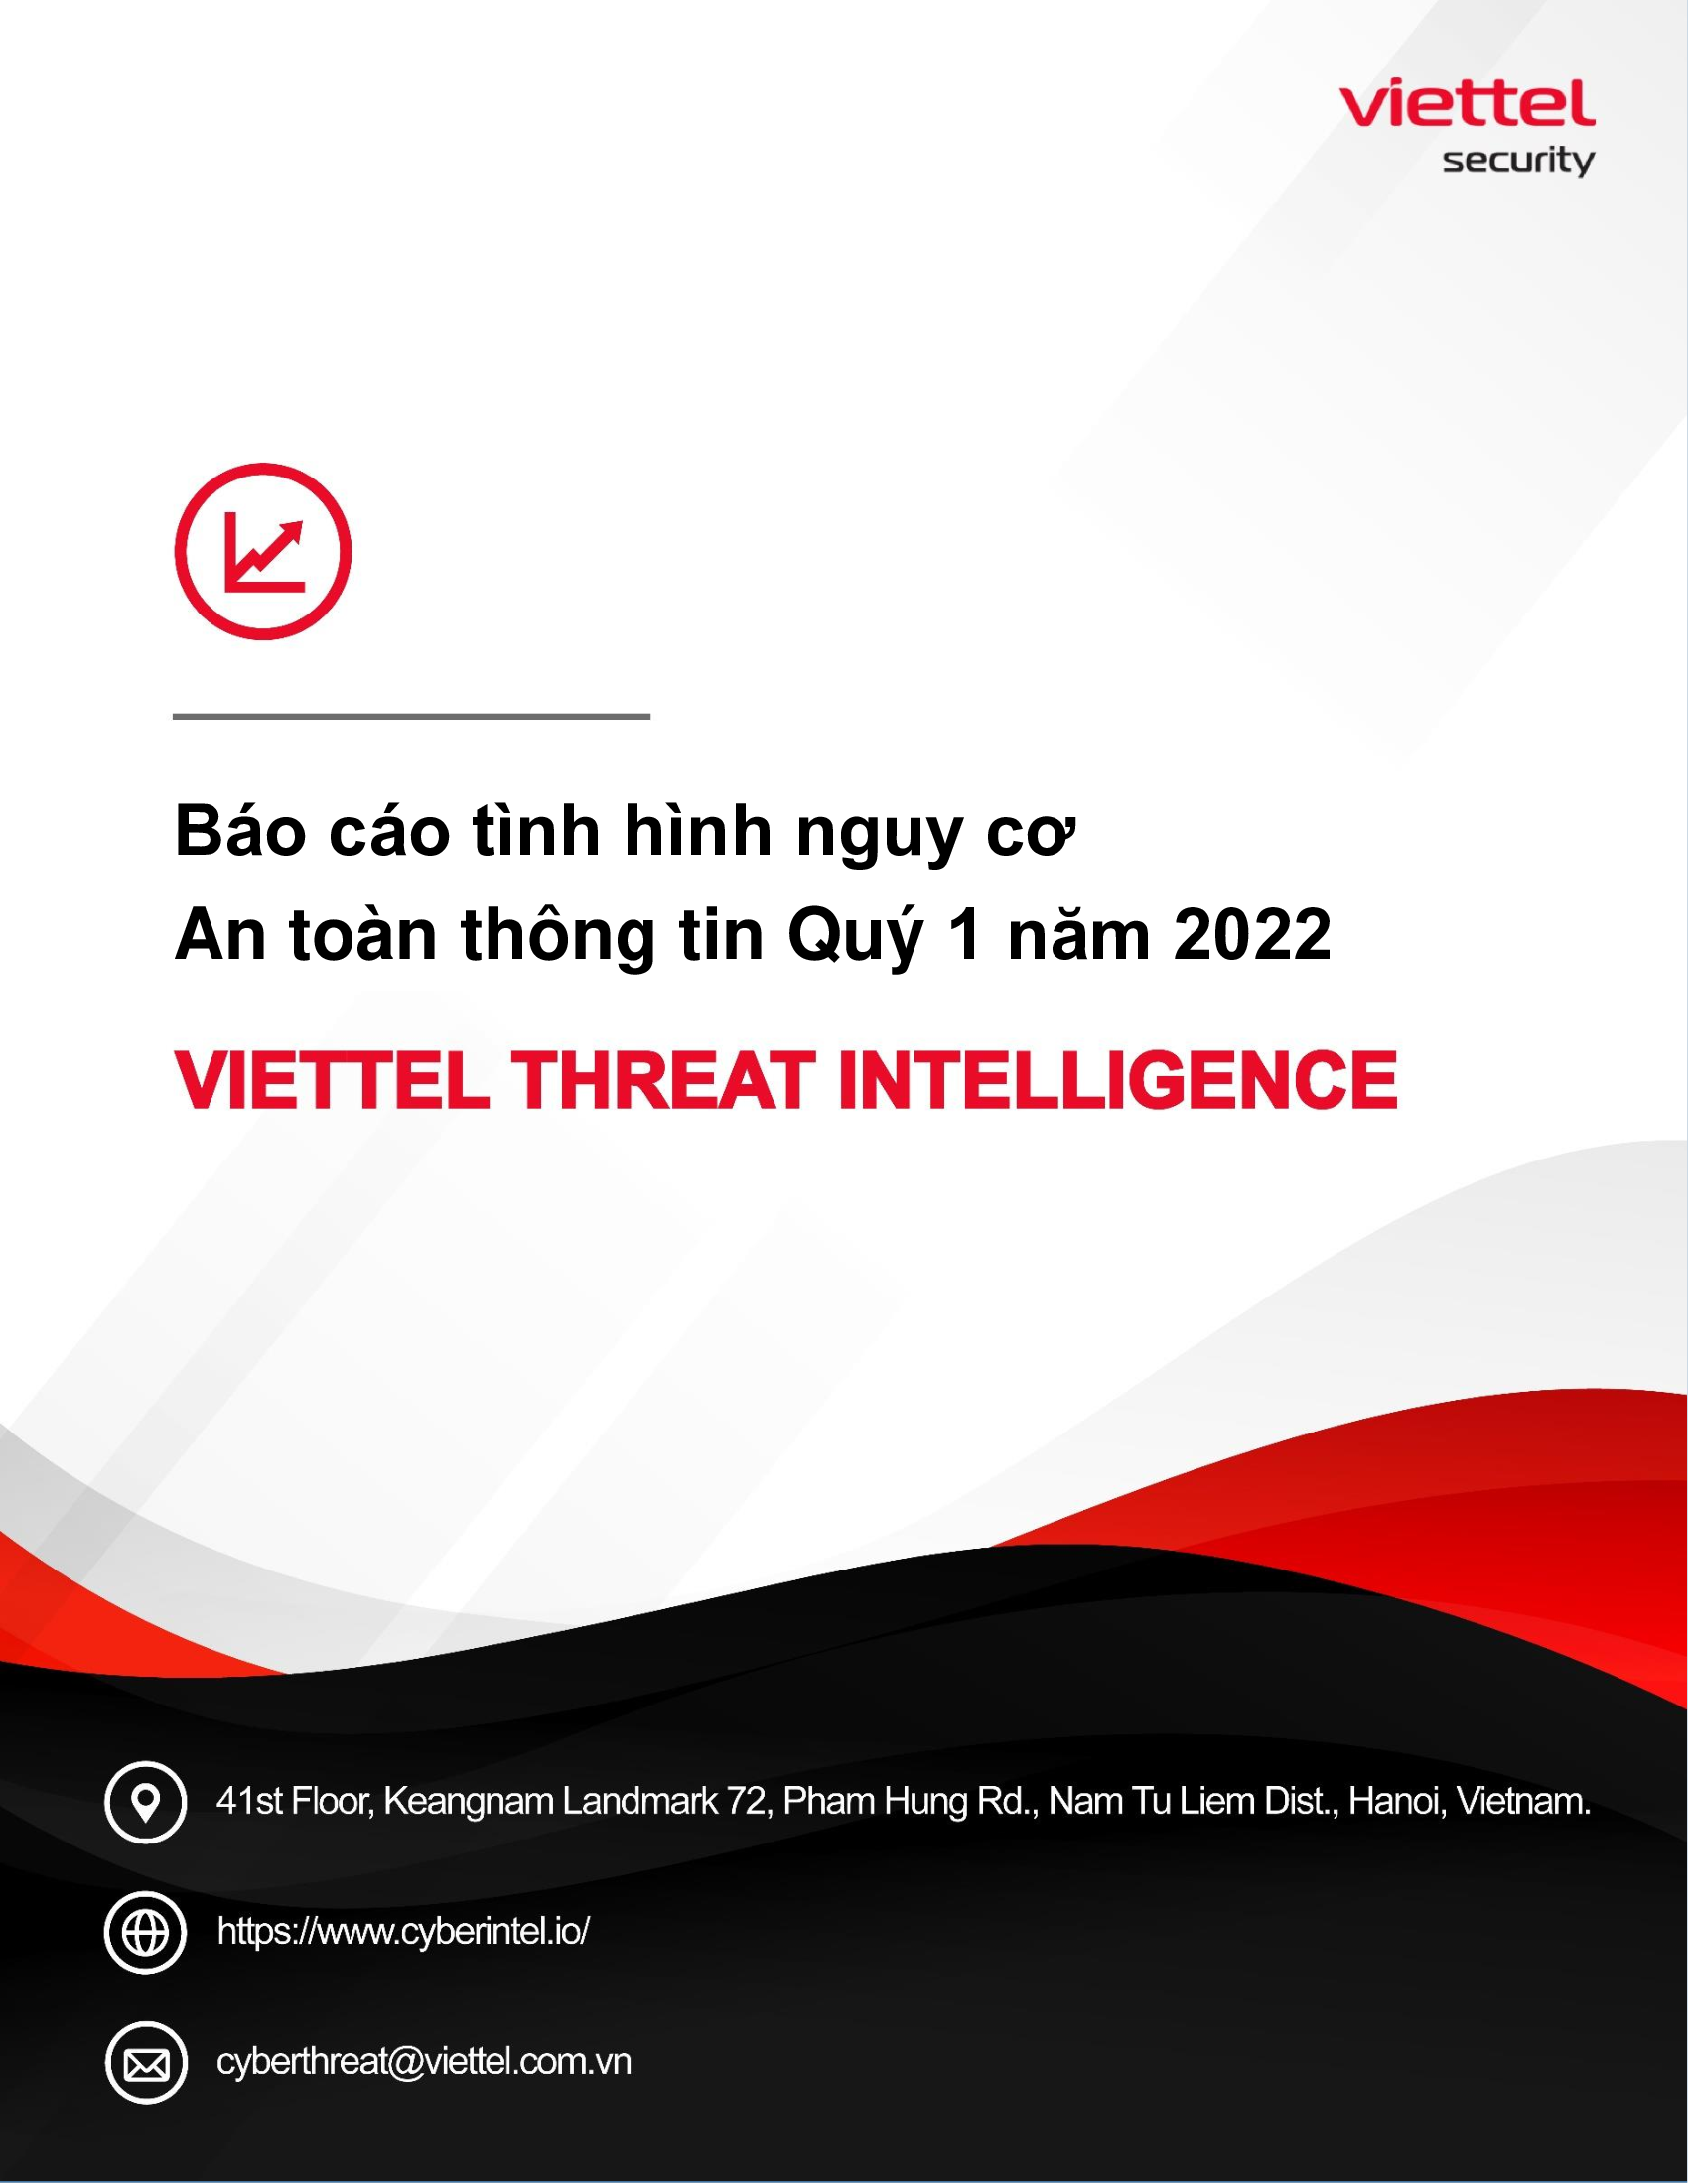 Báo cáo tình hình nguy cơ
An toàn thông tin Quý 1 năm 2022 - Viettel Threat Intelligence